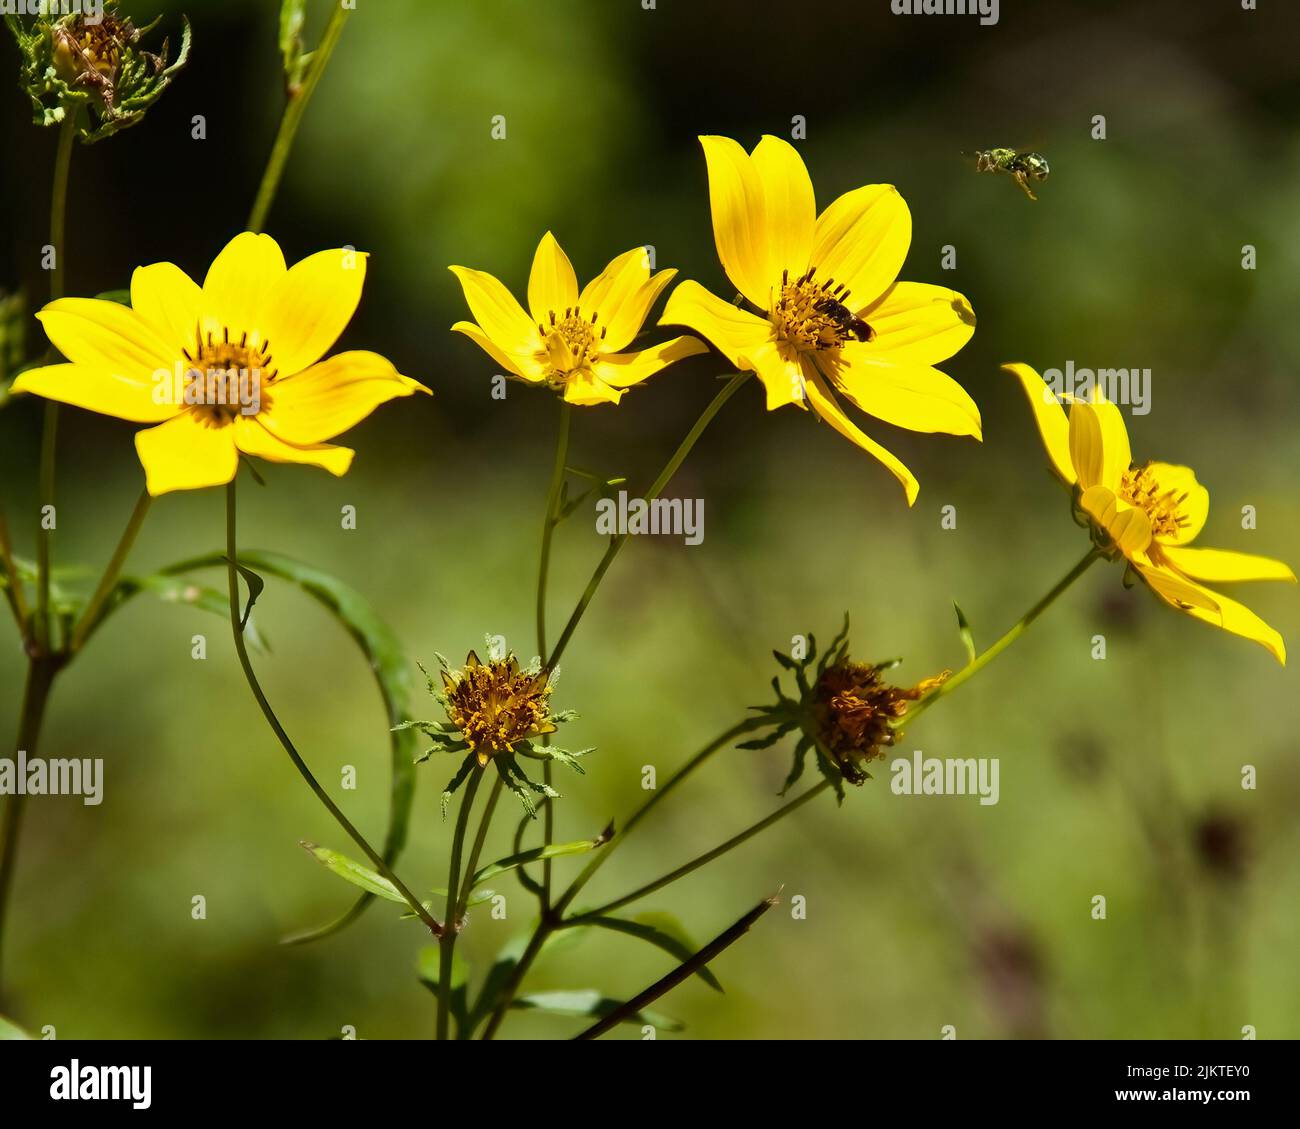 The yellow Bidens aristosa flowers Stock Photo